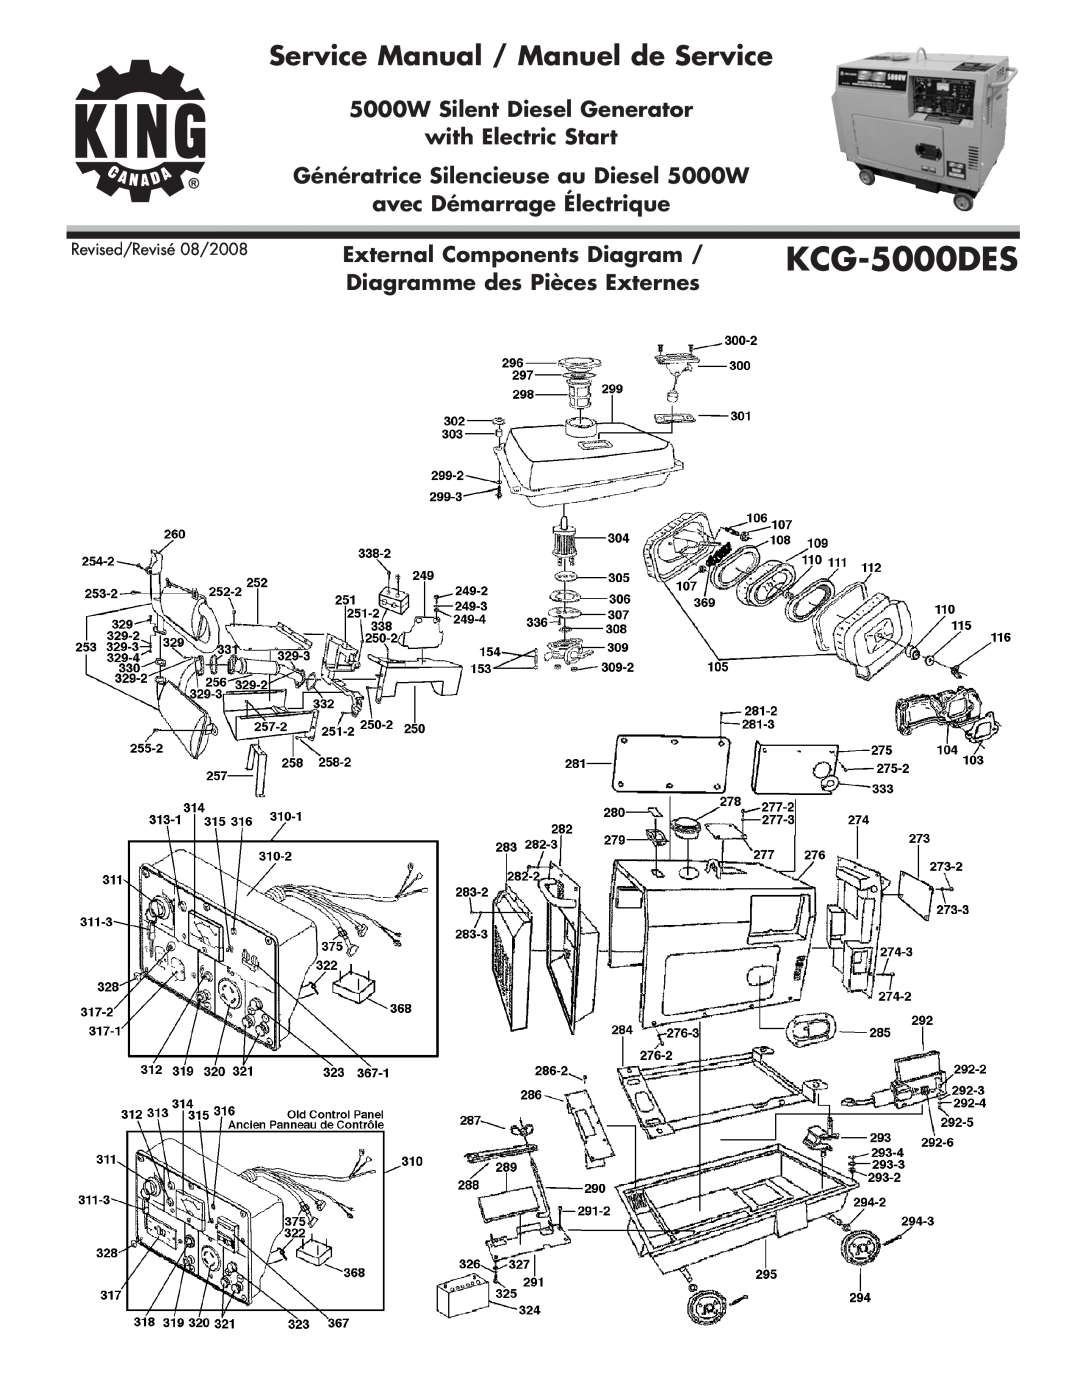 King Canada KCG-5000DES External Components Diagram, Diagramme des Pièces Externes, avec Démarrage Électrique 